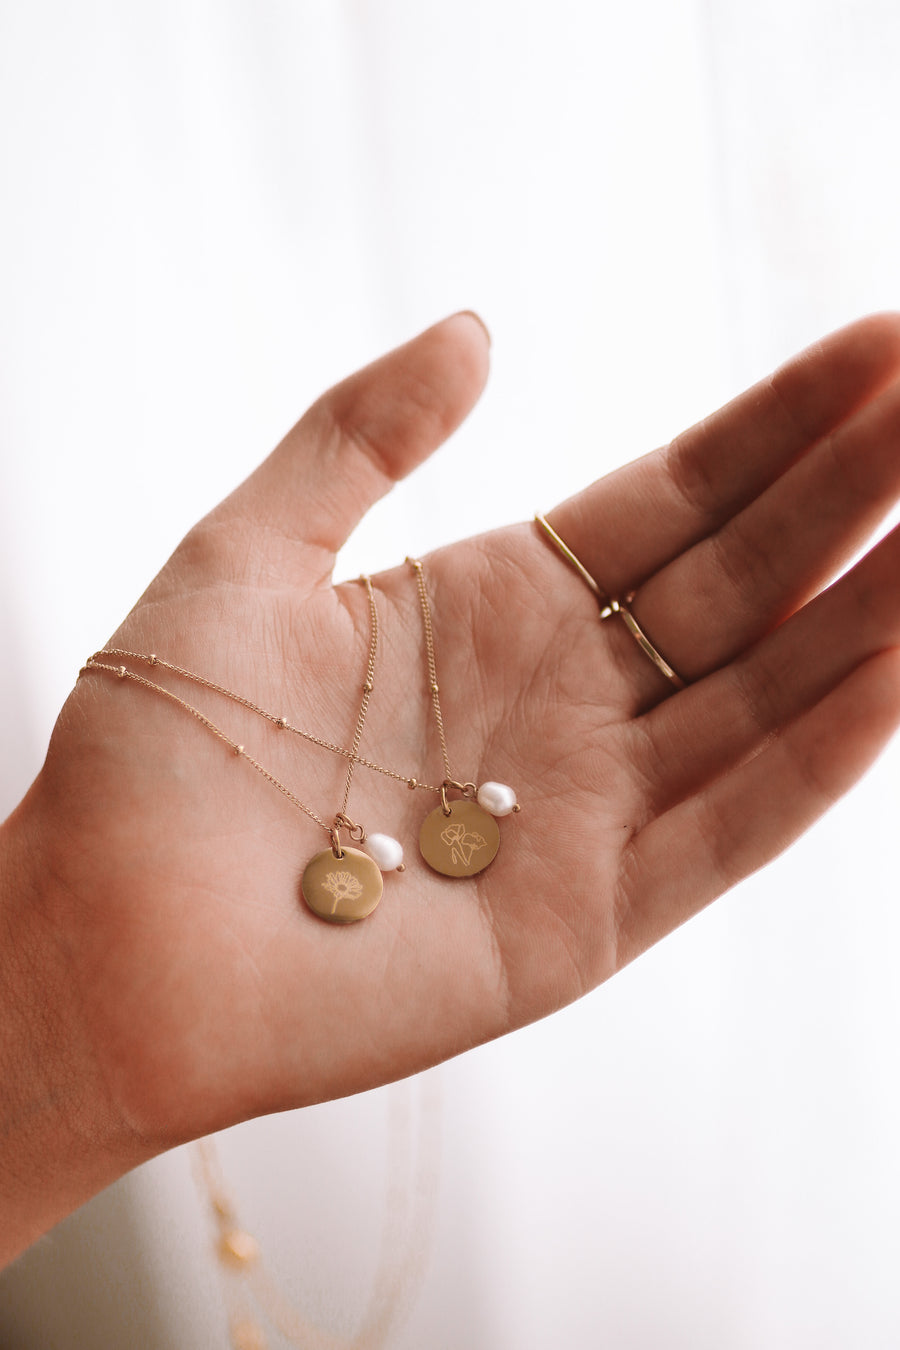 Kresta - Gold or Silver Monogrammed Necklace